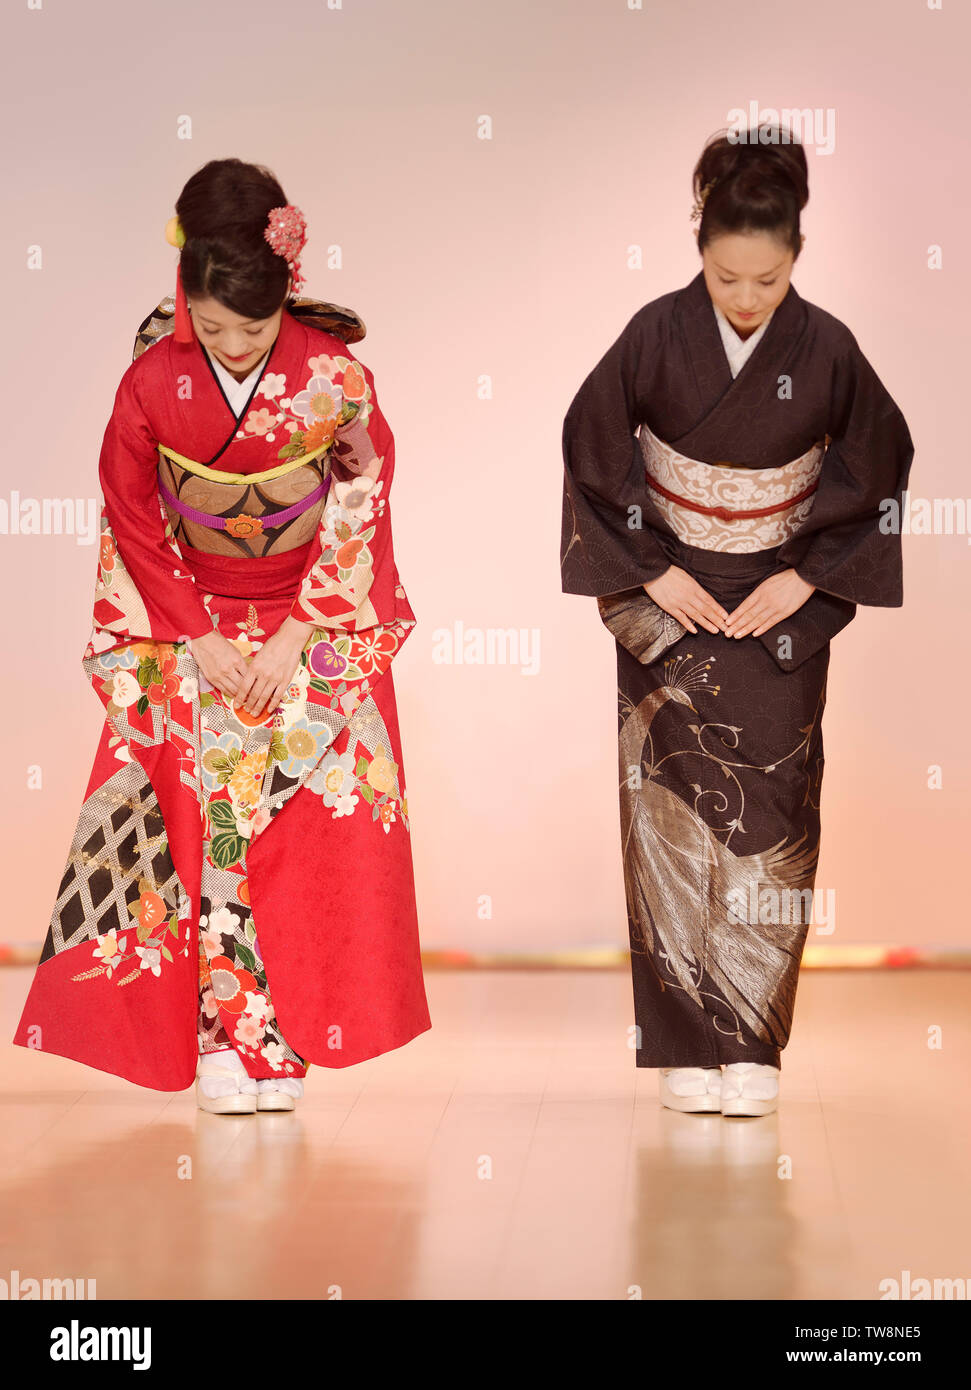 Licencia disponible en MaximImages.com - Mujeres japonesas en elegante kimono rojo y negro que se inclinan en un desfile de moda en Kyoto, Japón. Foto de stock